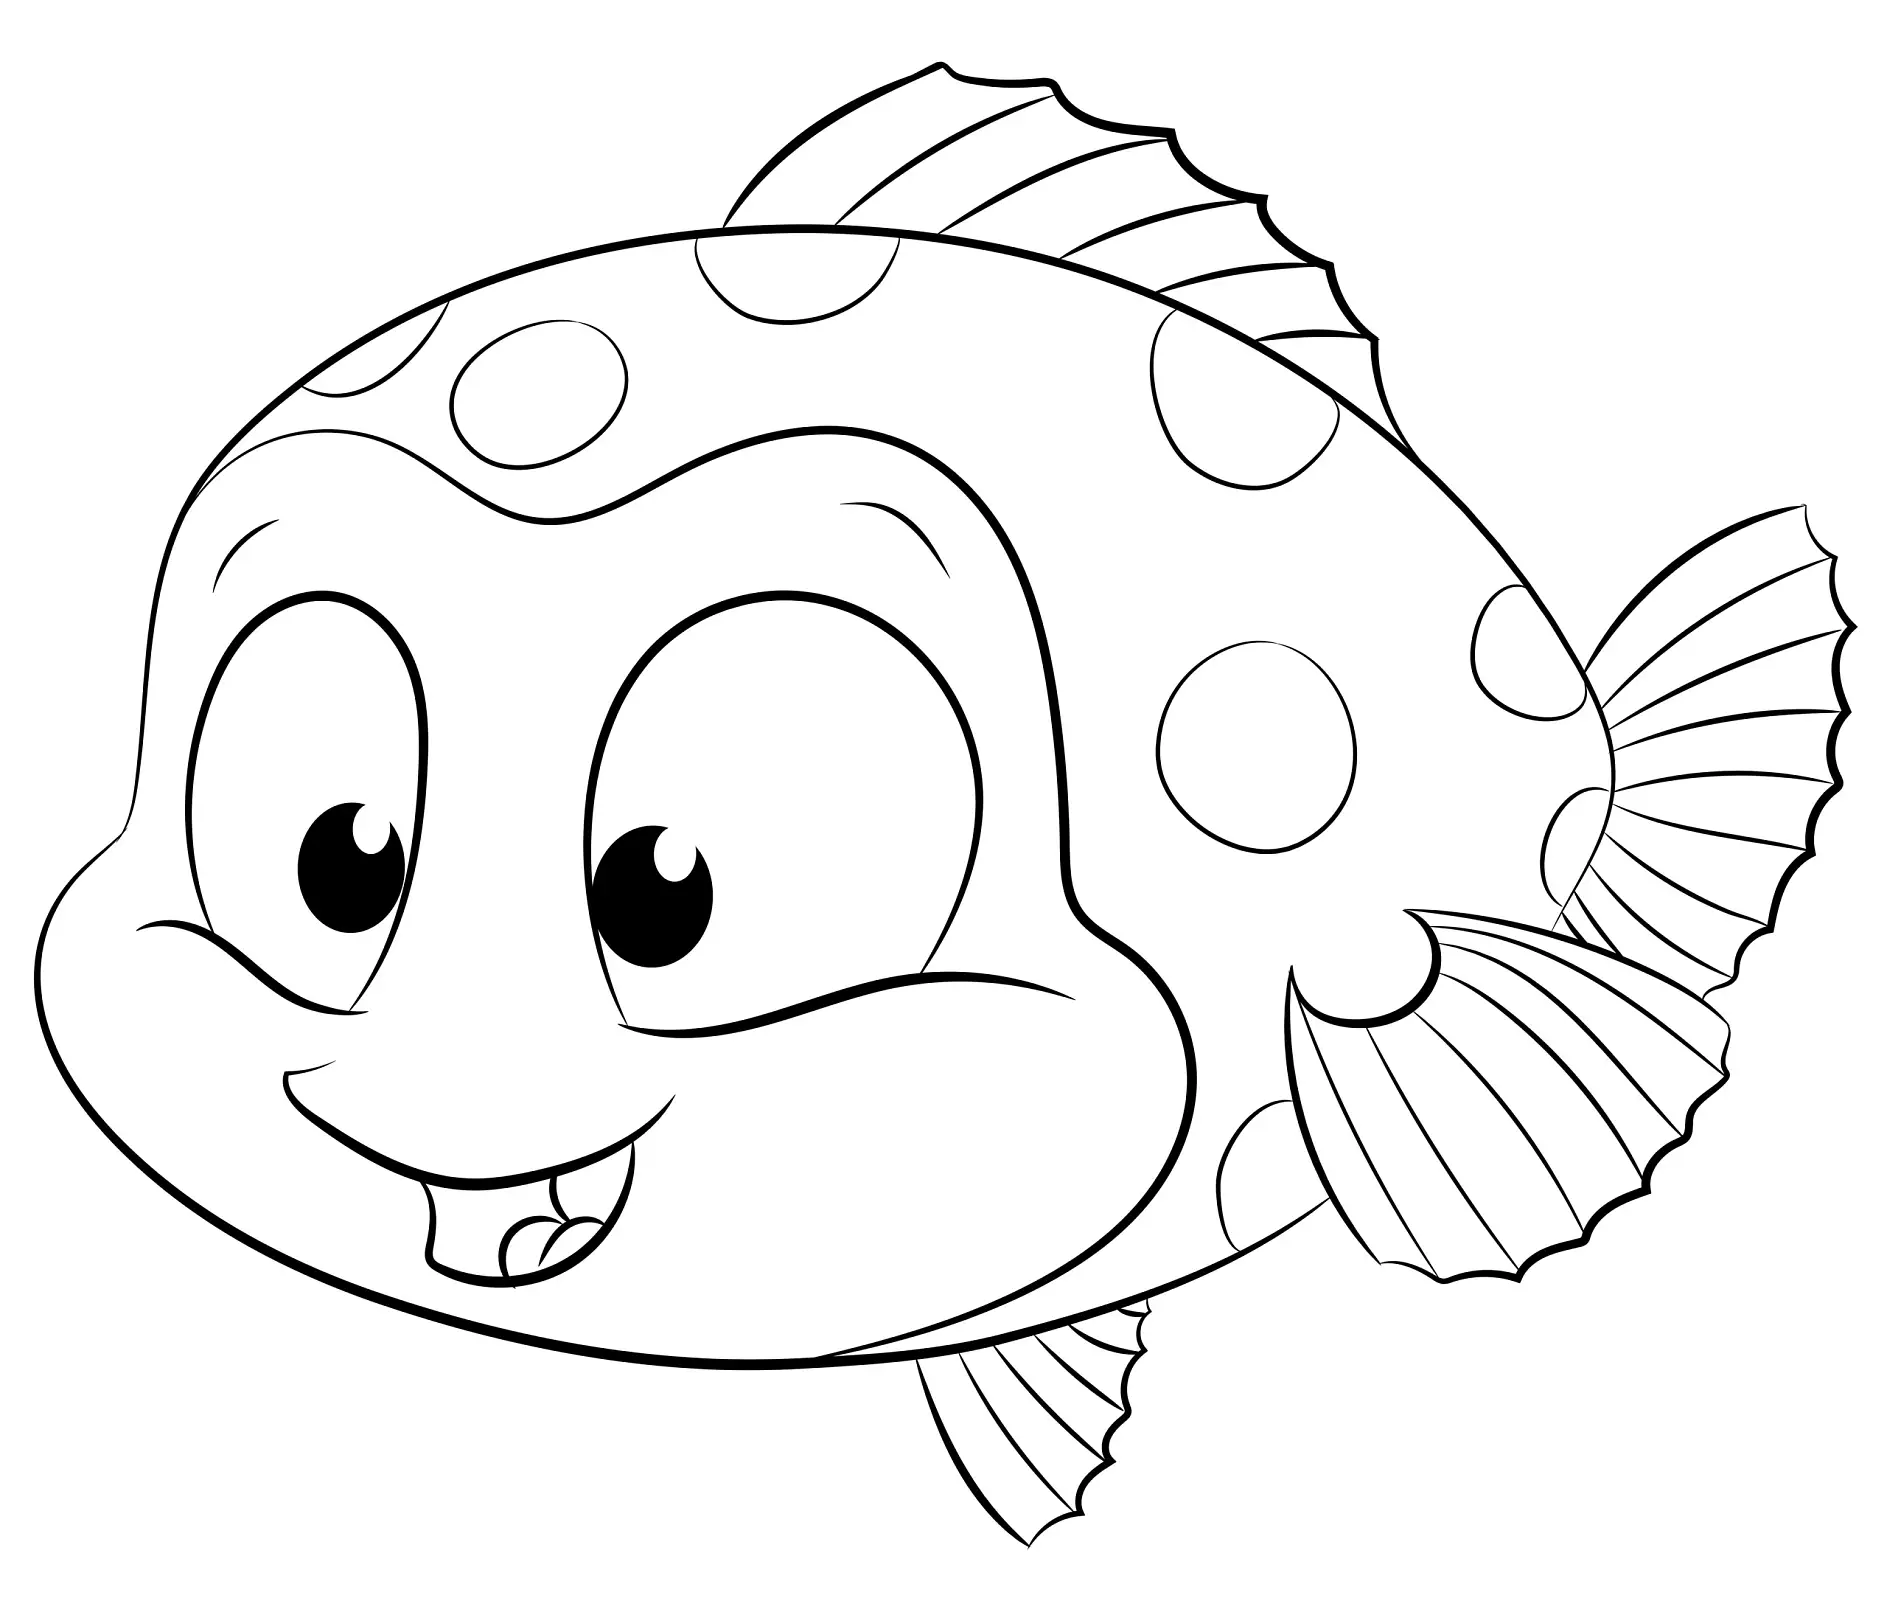 Ausmalbild Fisch mit Punkten und lächelndem Gesicht